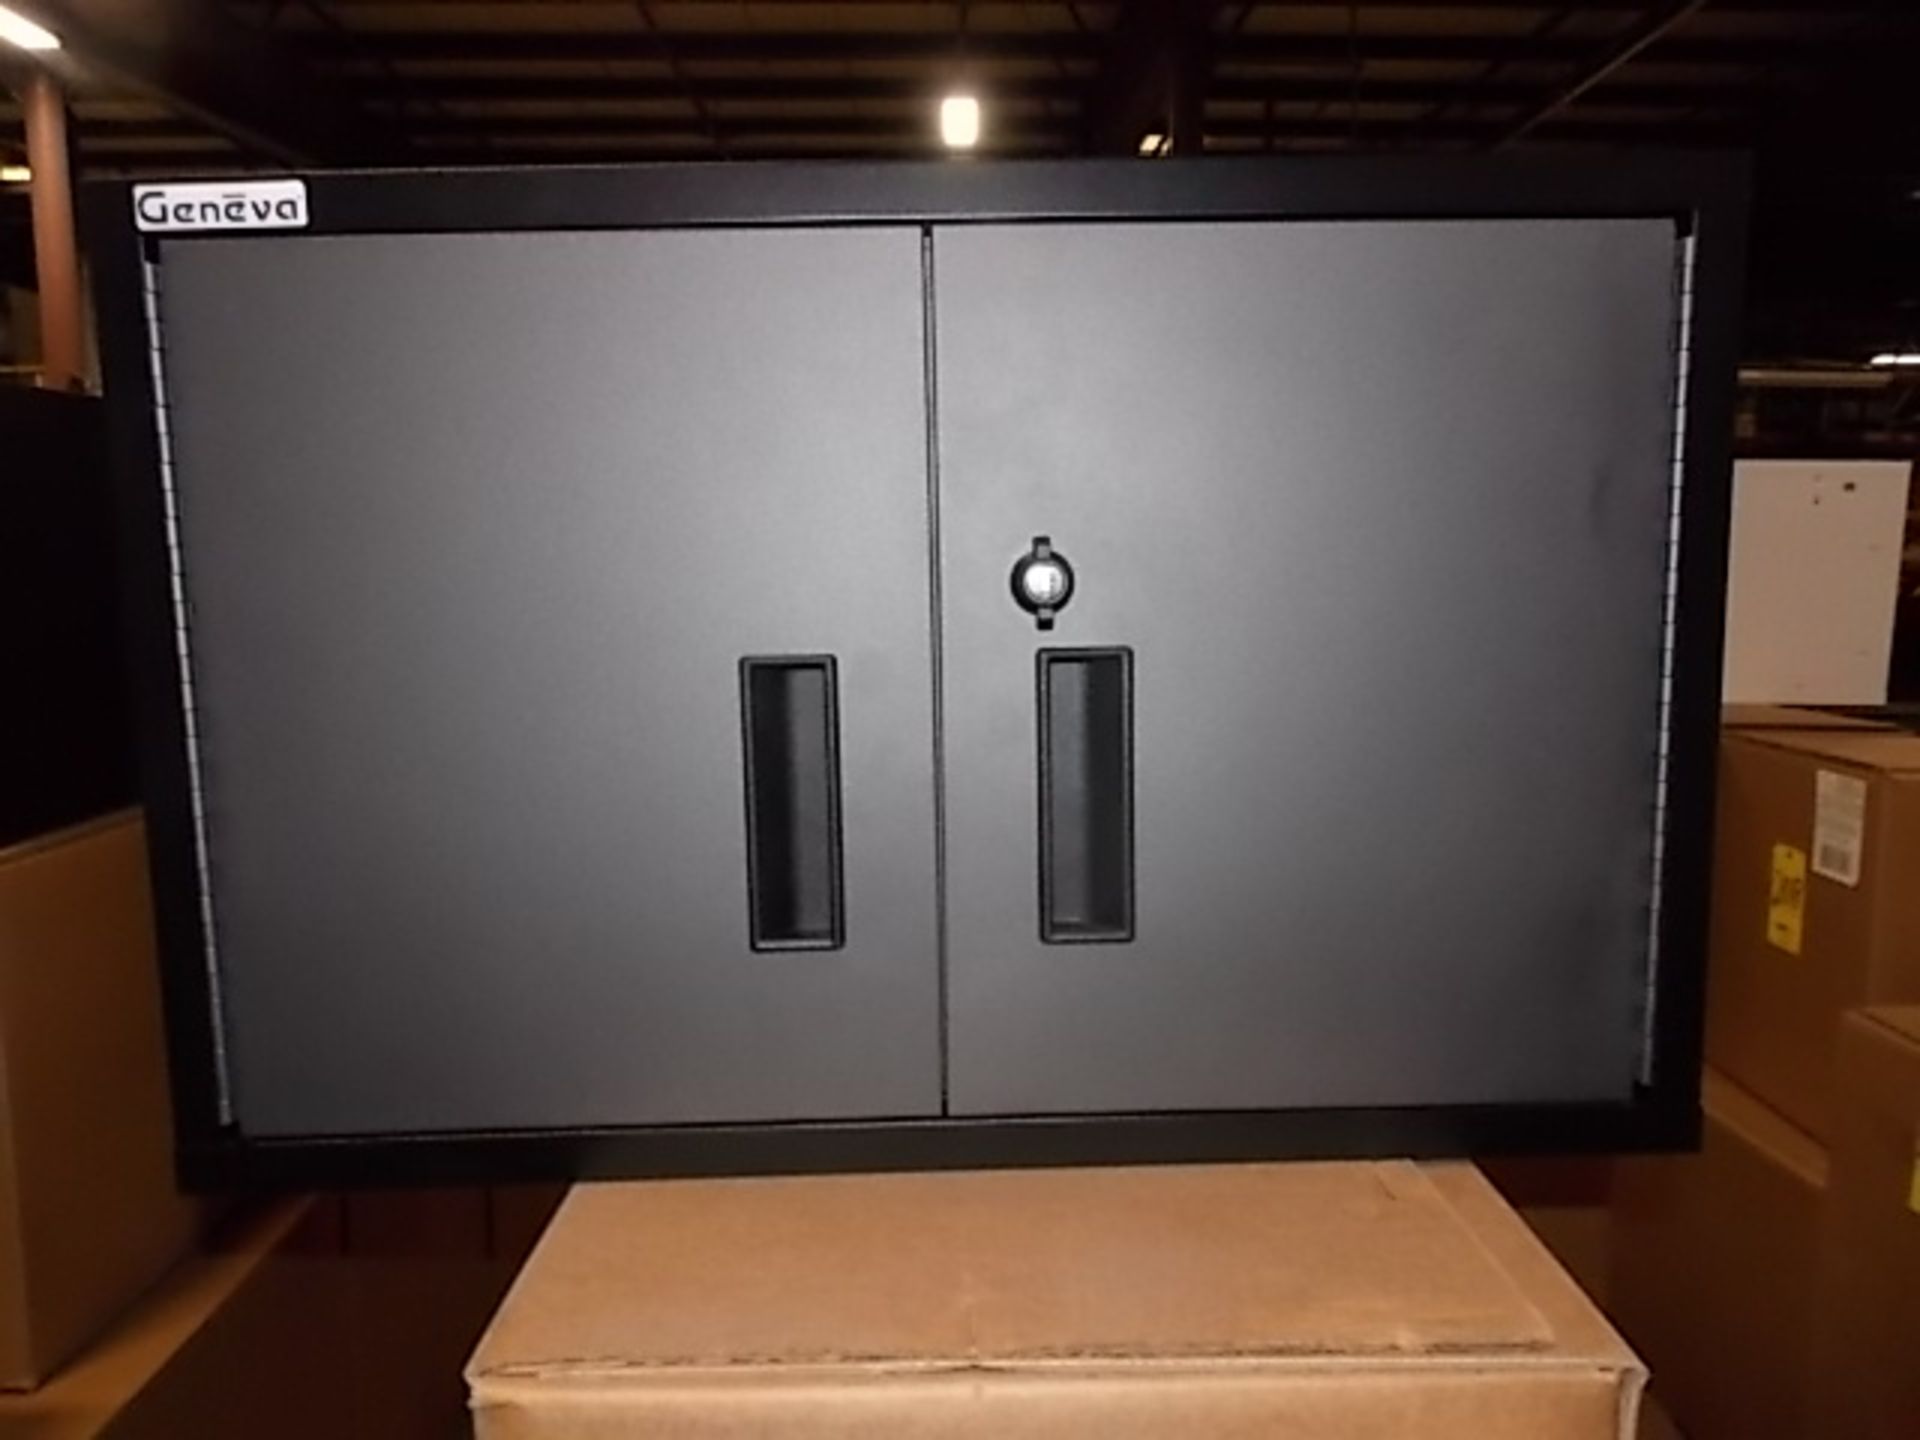 Garage Upper Storage Cabinet, 30 in. x 15 in. x 19 in., Gun Metal Gray